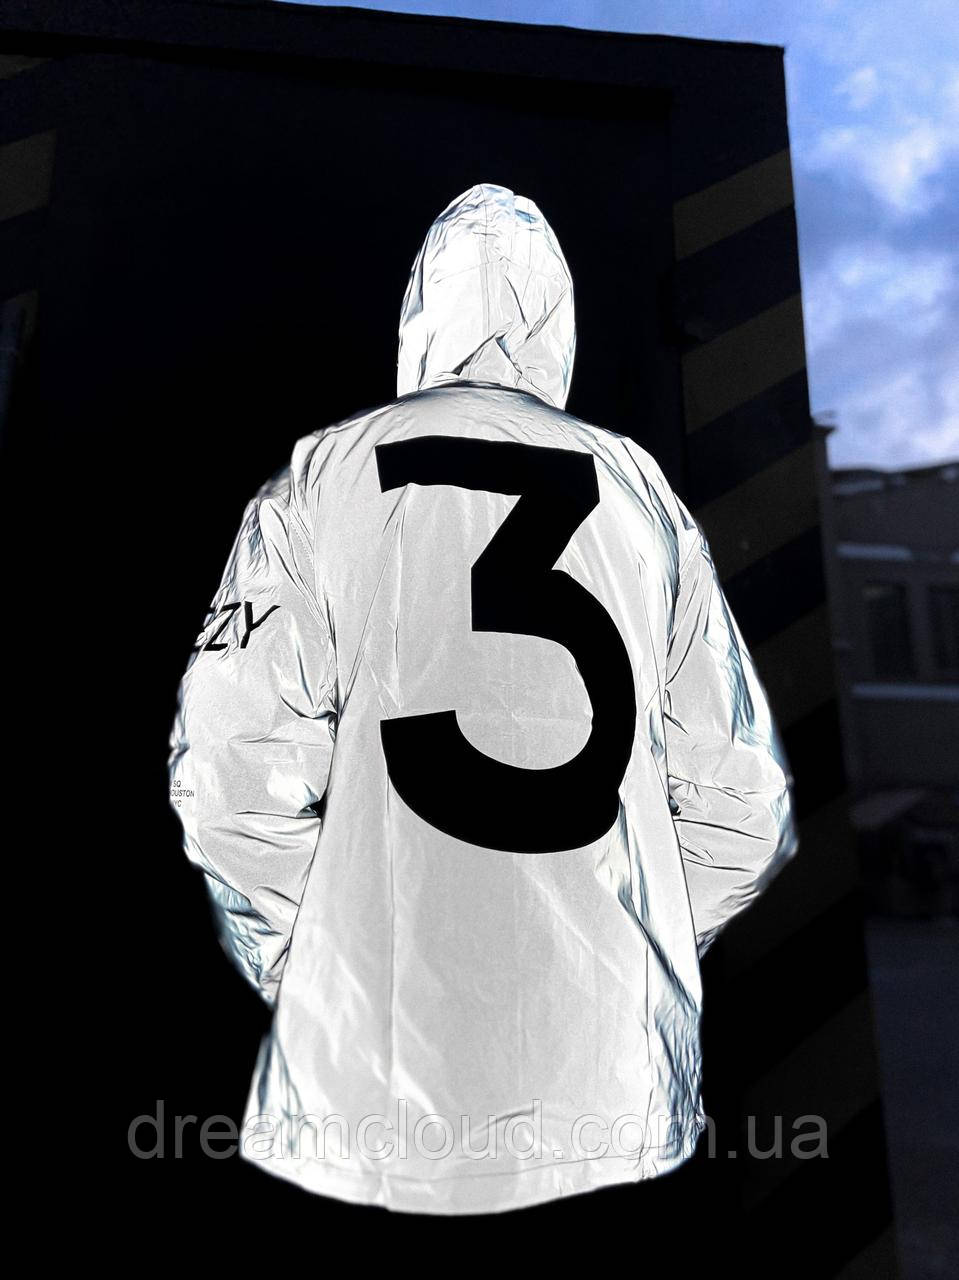 Рефлективная Куртка Adidas Yeezy Y-3 Наличие: (M)-2 (L)-1 (XL)-2 (XXL)-2 — Купить Недорого Bigl.ua (1698850476)